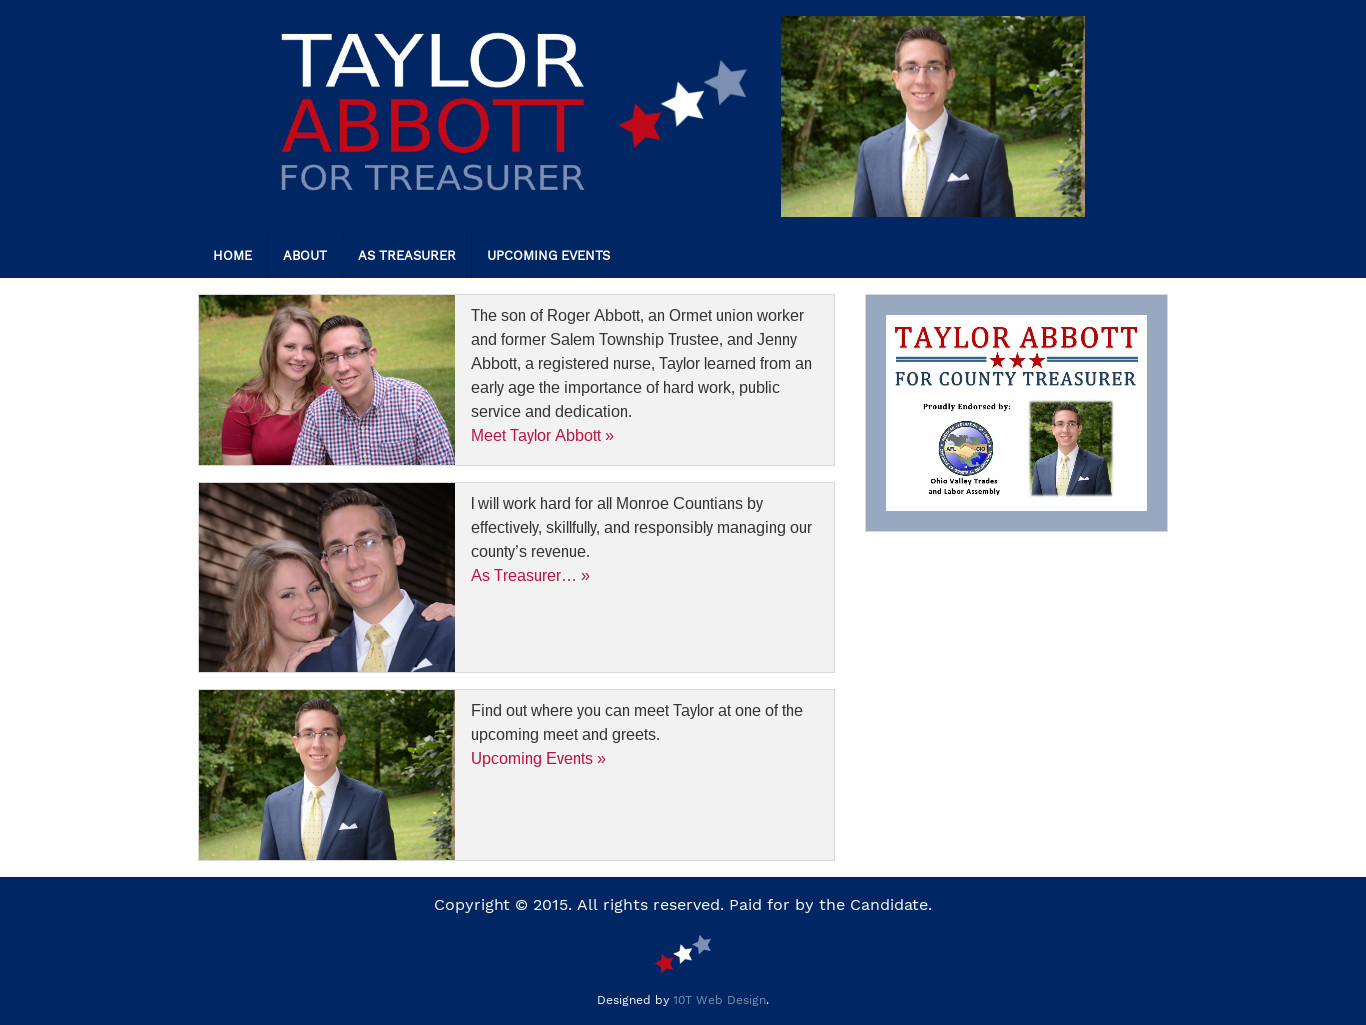 Taylor Abbott for Treasurer